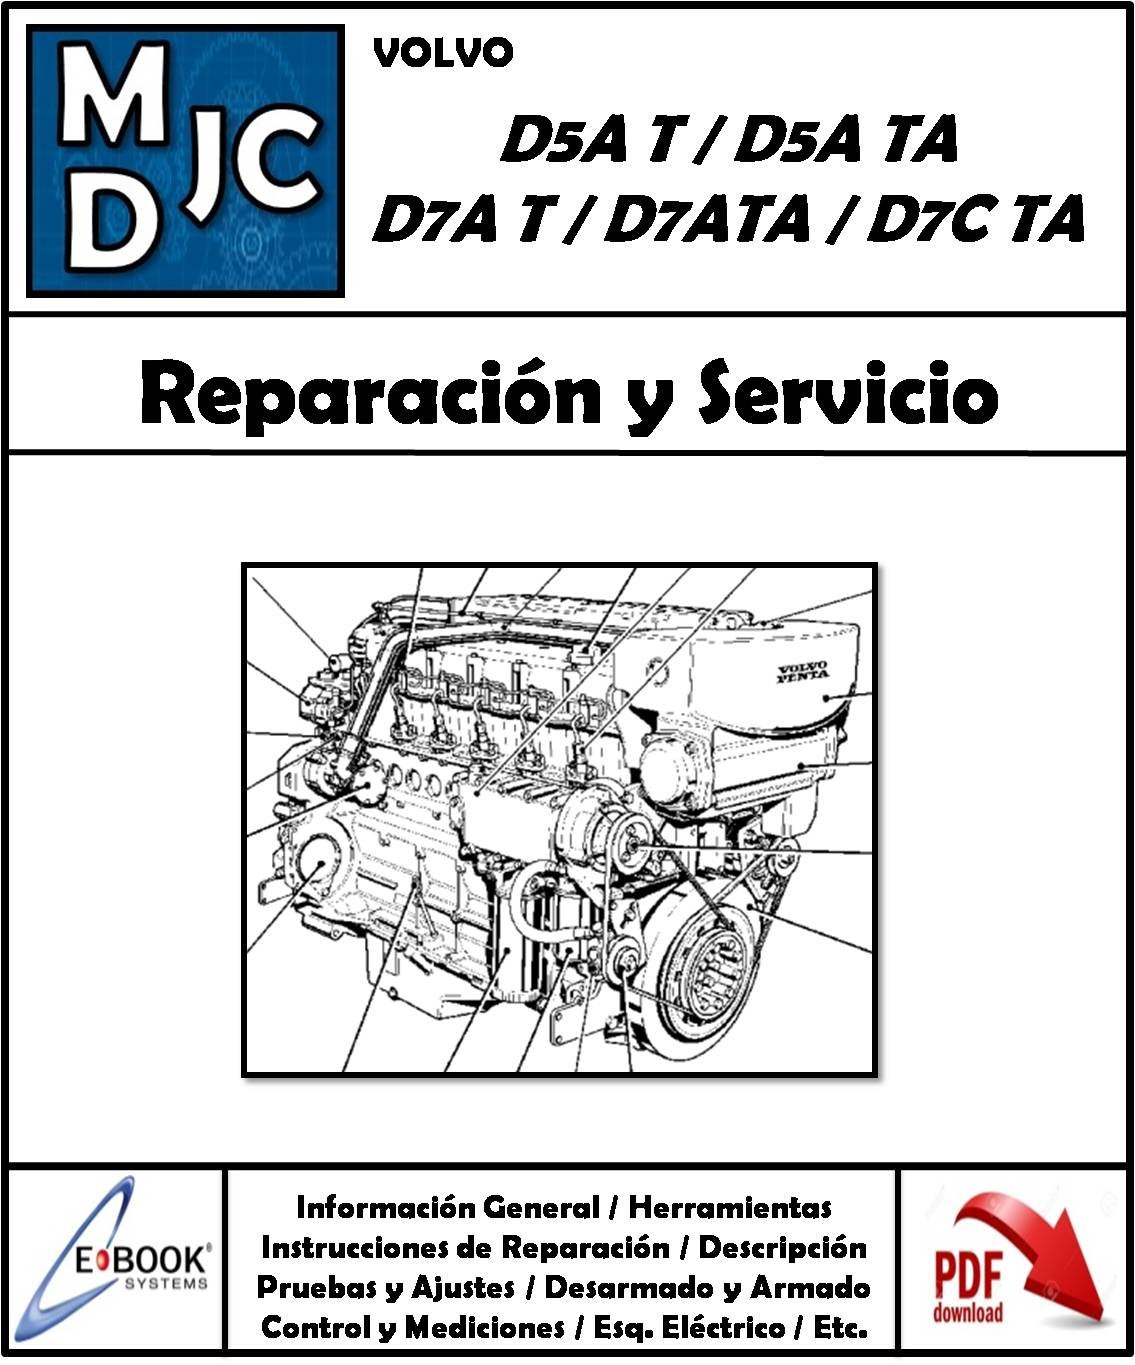 Volvo D5A T / D5A TA / D7A T / D7A TA / D7C TA